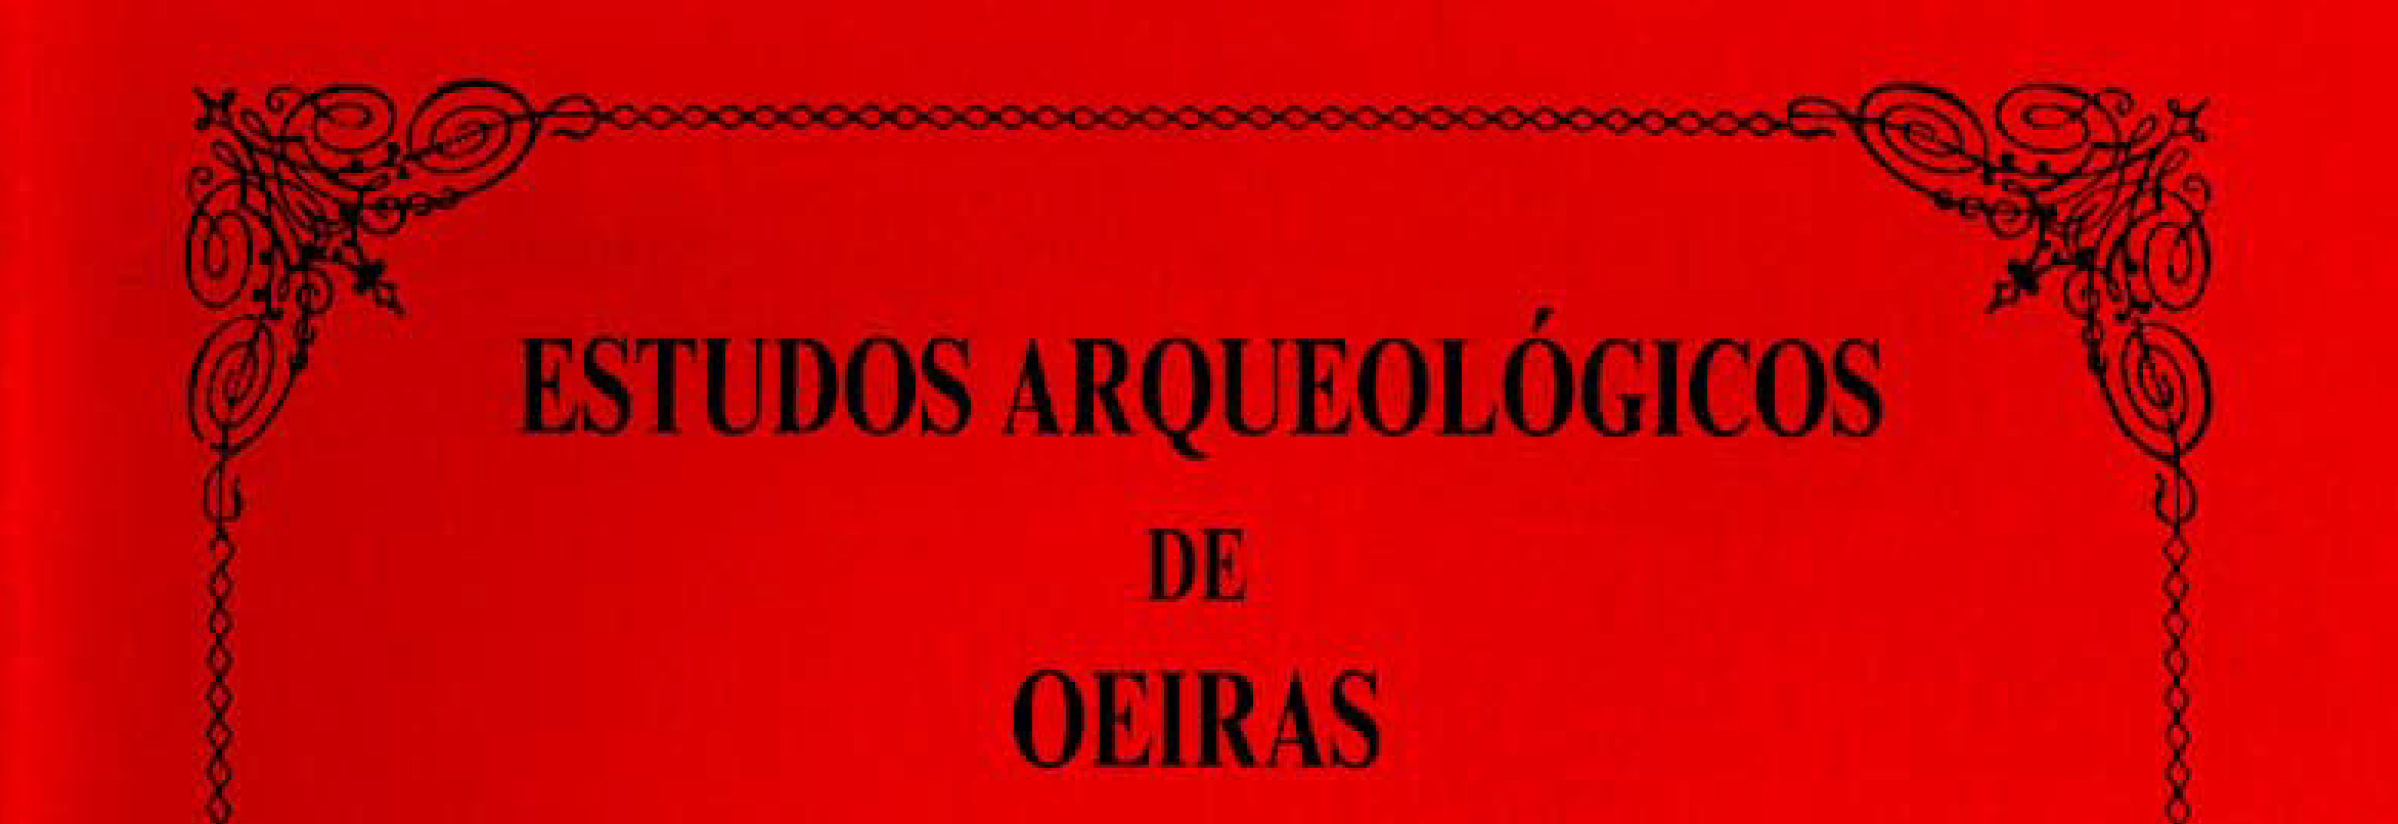 Estudos Arqueológicos de Oeiras, 8